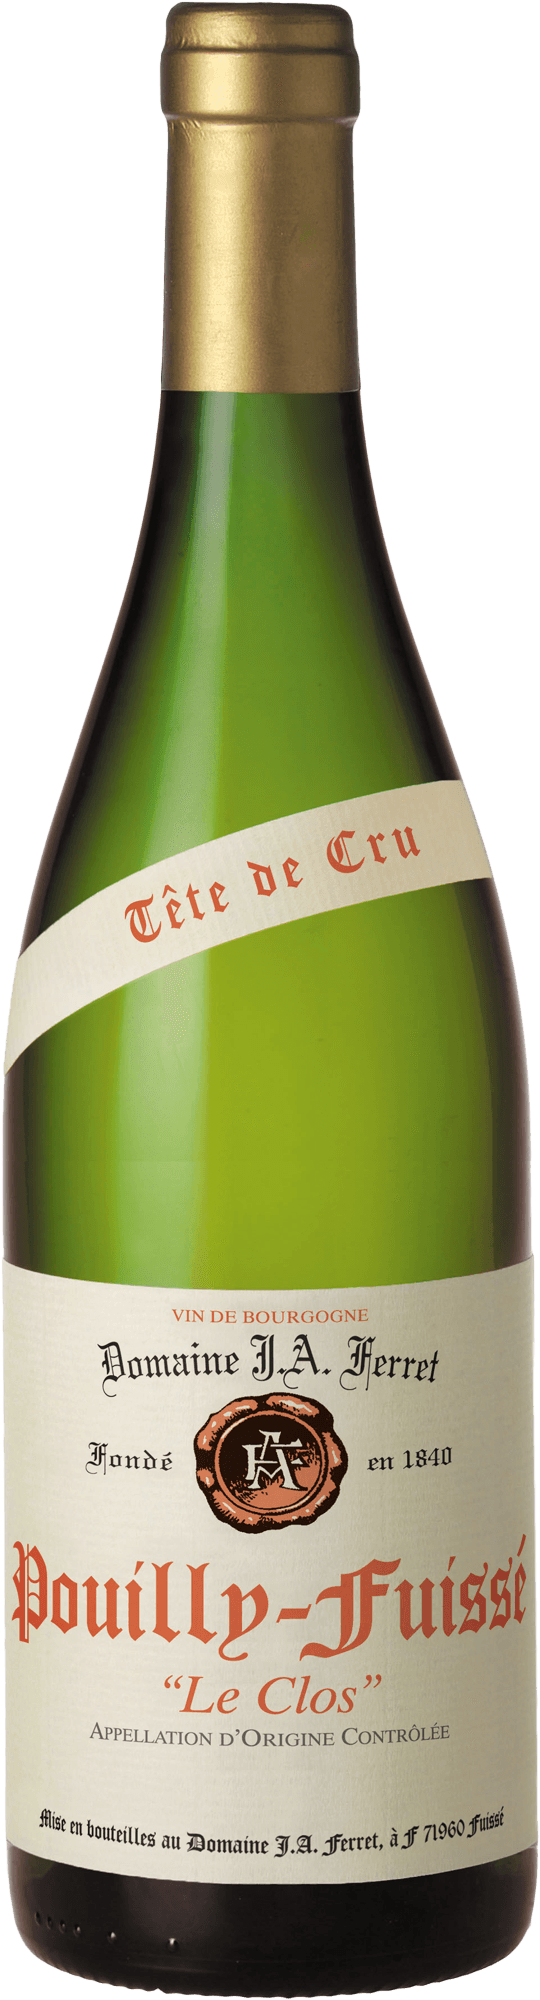 Pouilly fuiss tte de cru le clos 2018 Domaine FERRET J.A., Bourgogne blanc